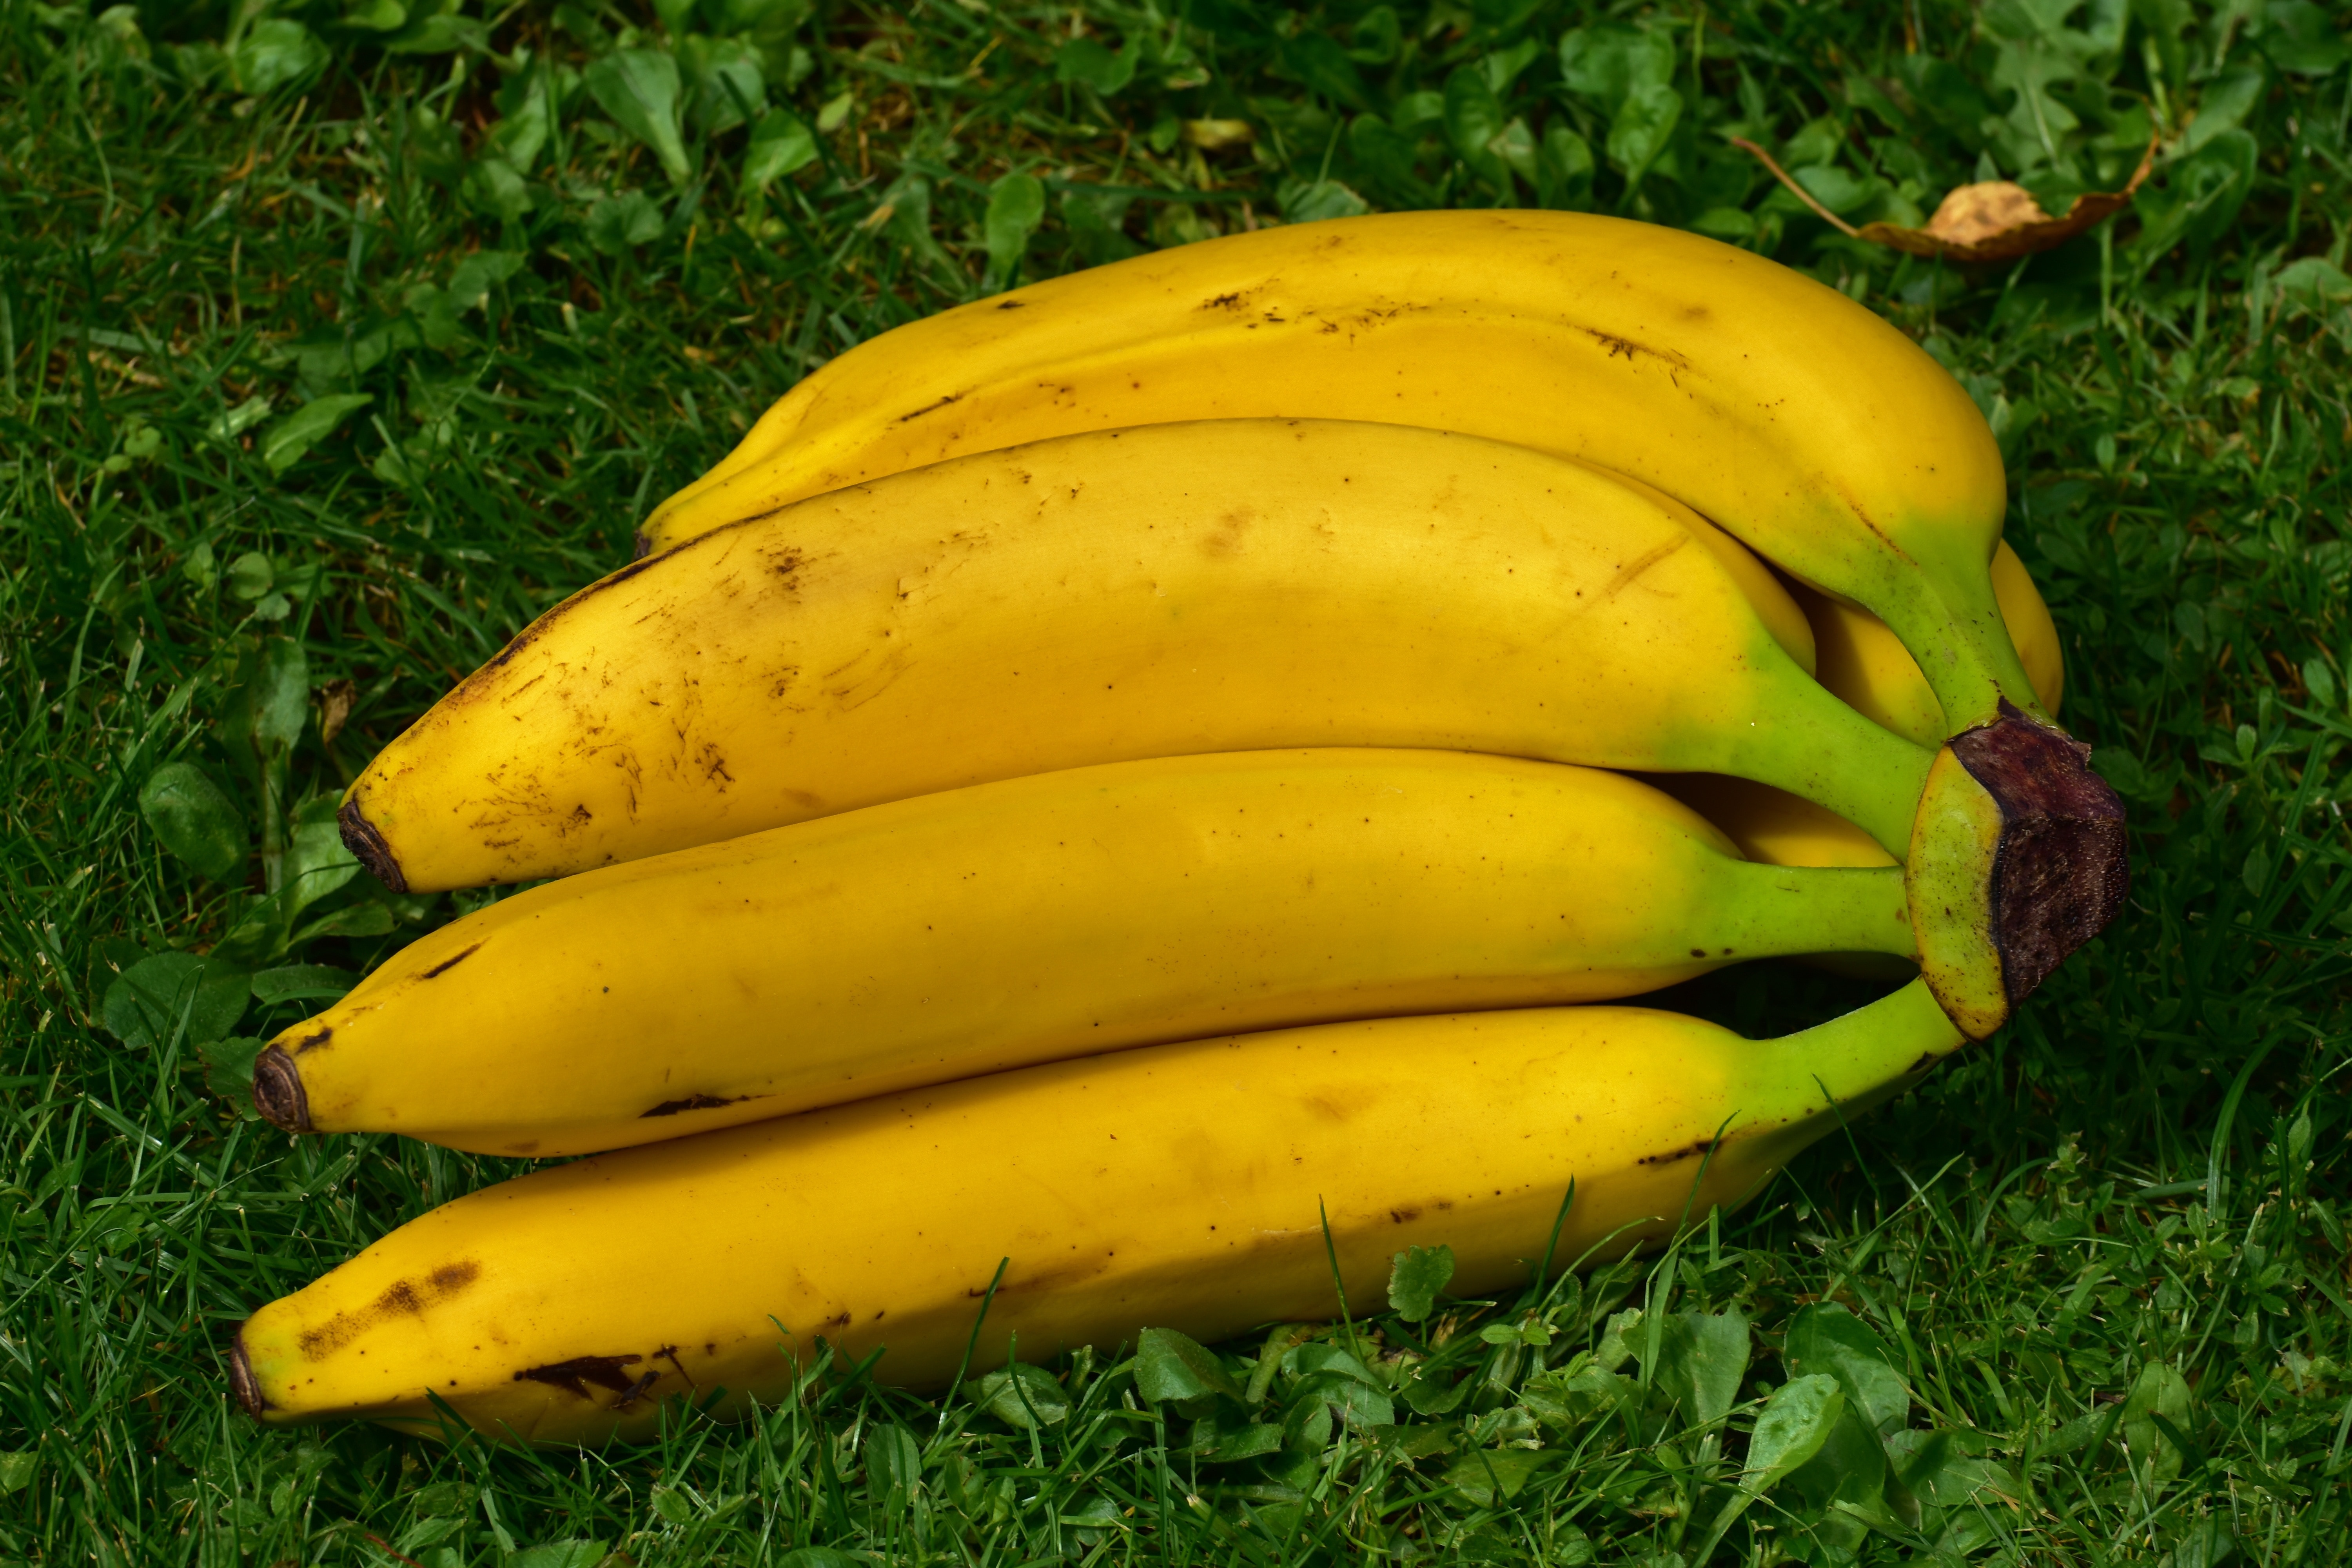 white and yellow bananas